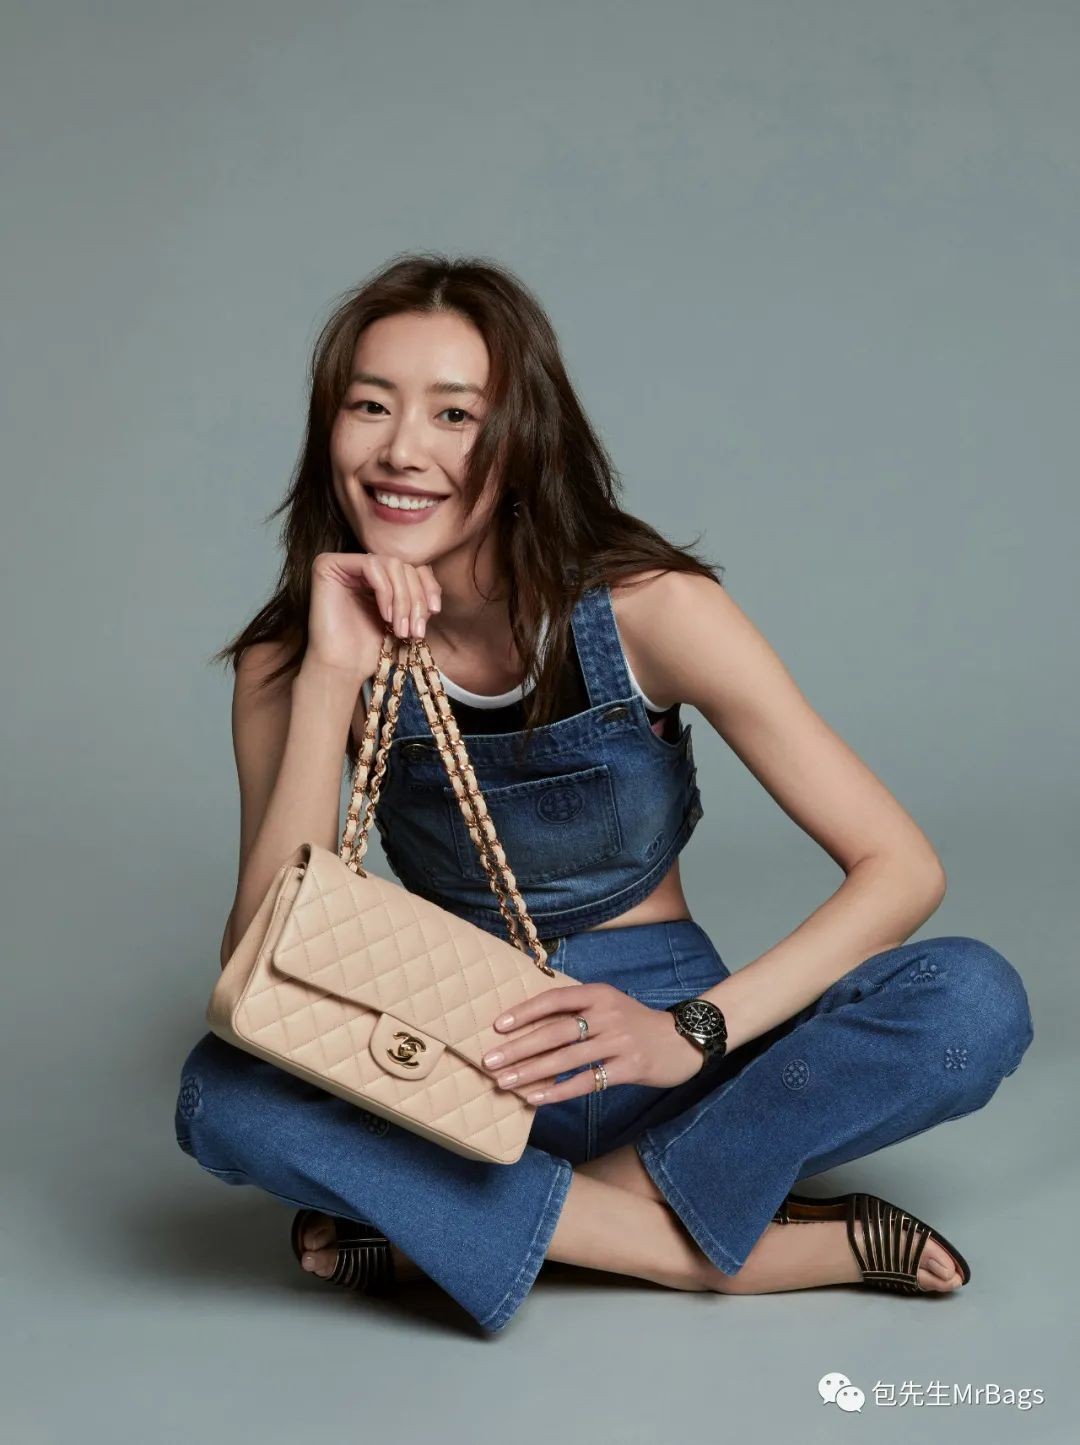 Chanel bags are too expensive, what should I do? (2023 updated)-Negozio in linea della borsa falsa di Louis Vuitton di migliore qualità, borsa del progettista della replica ru